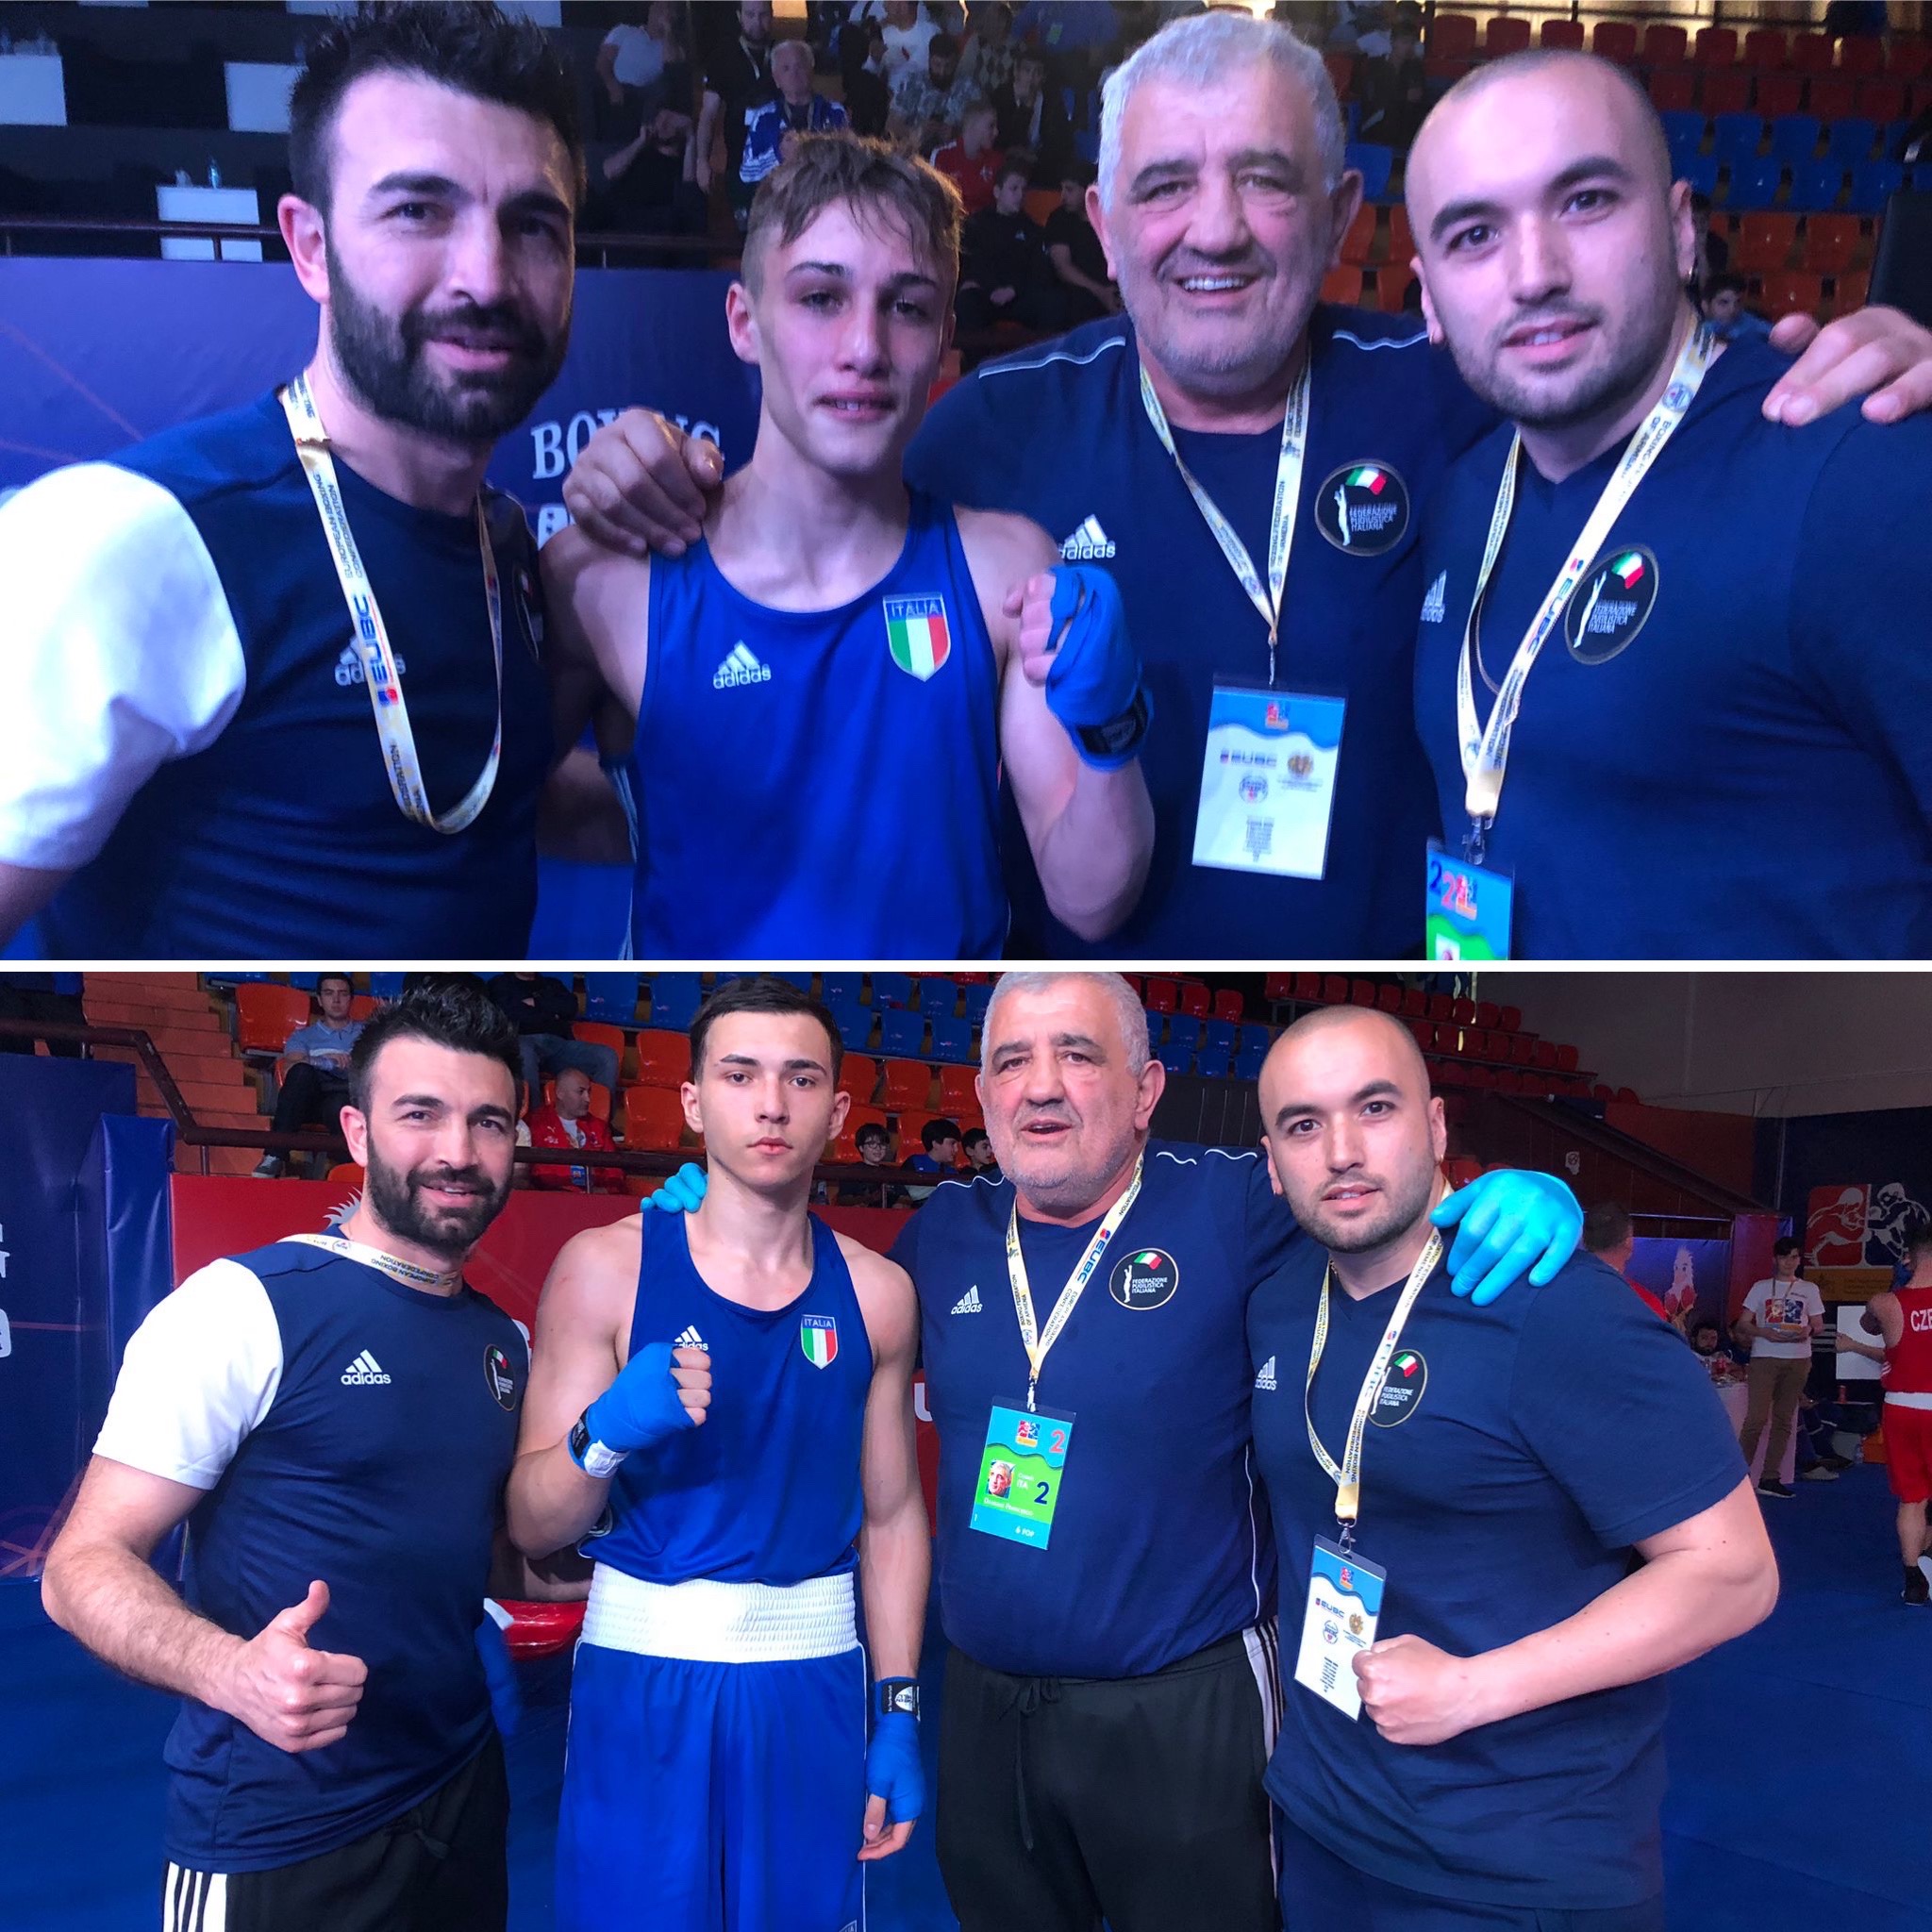 Europei Youth 2023 (Yerevan 25/4 - 3/5) - Due vittorie azzurre nella seconda giornata